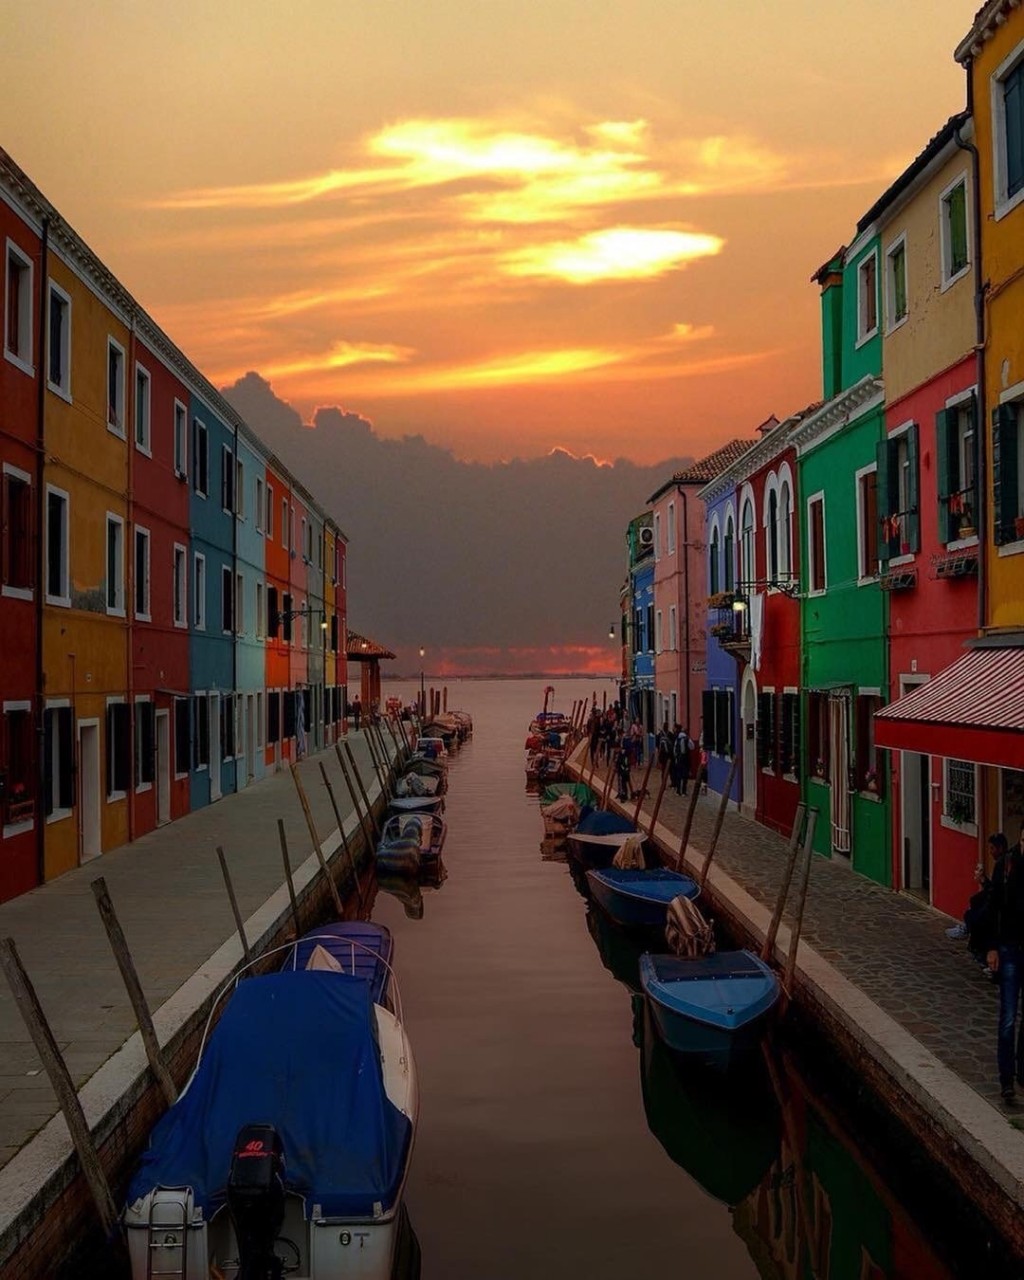 童话般的彩色岛-威尼斯的布拉诺岛